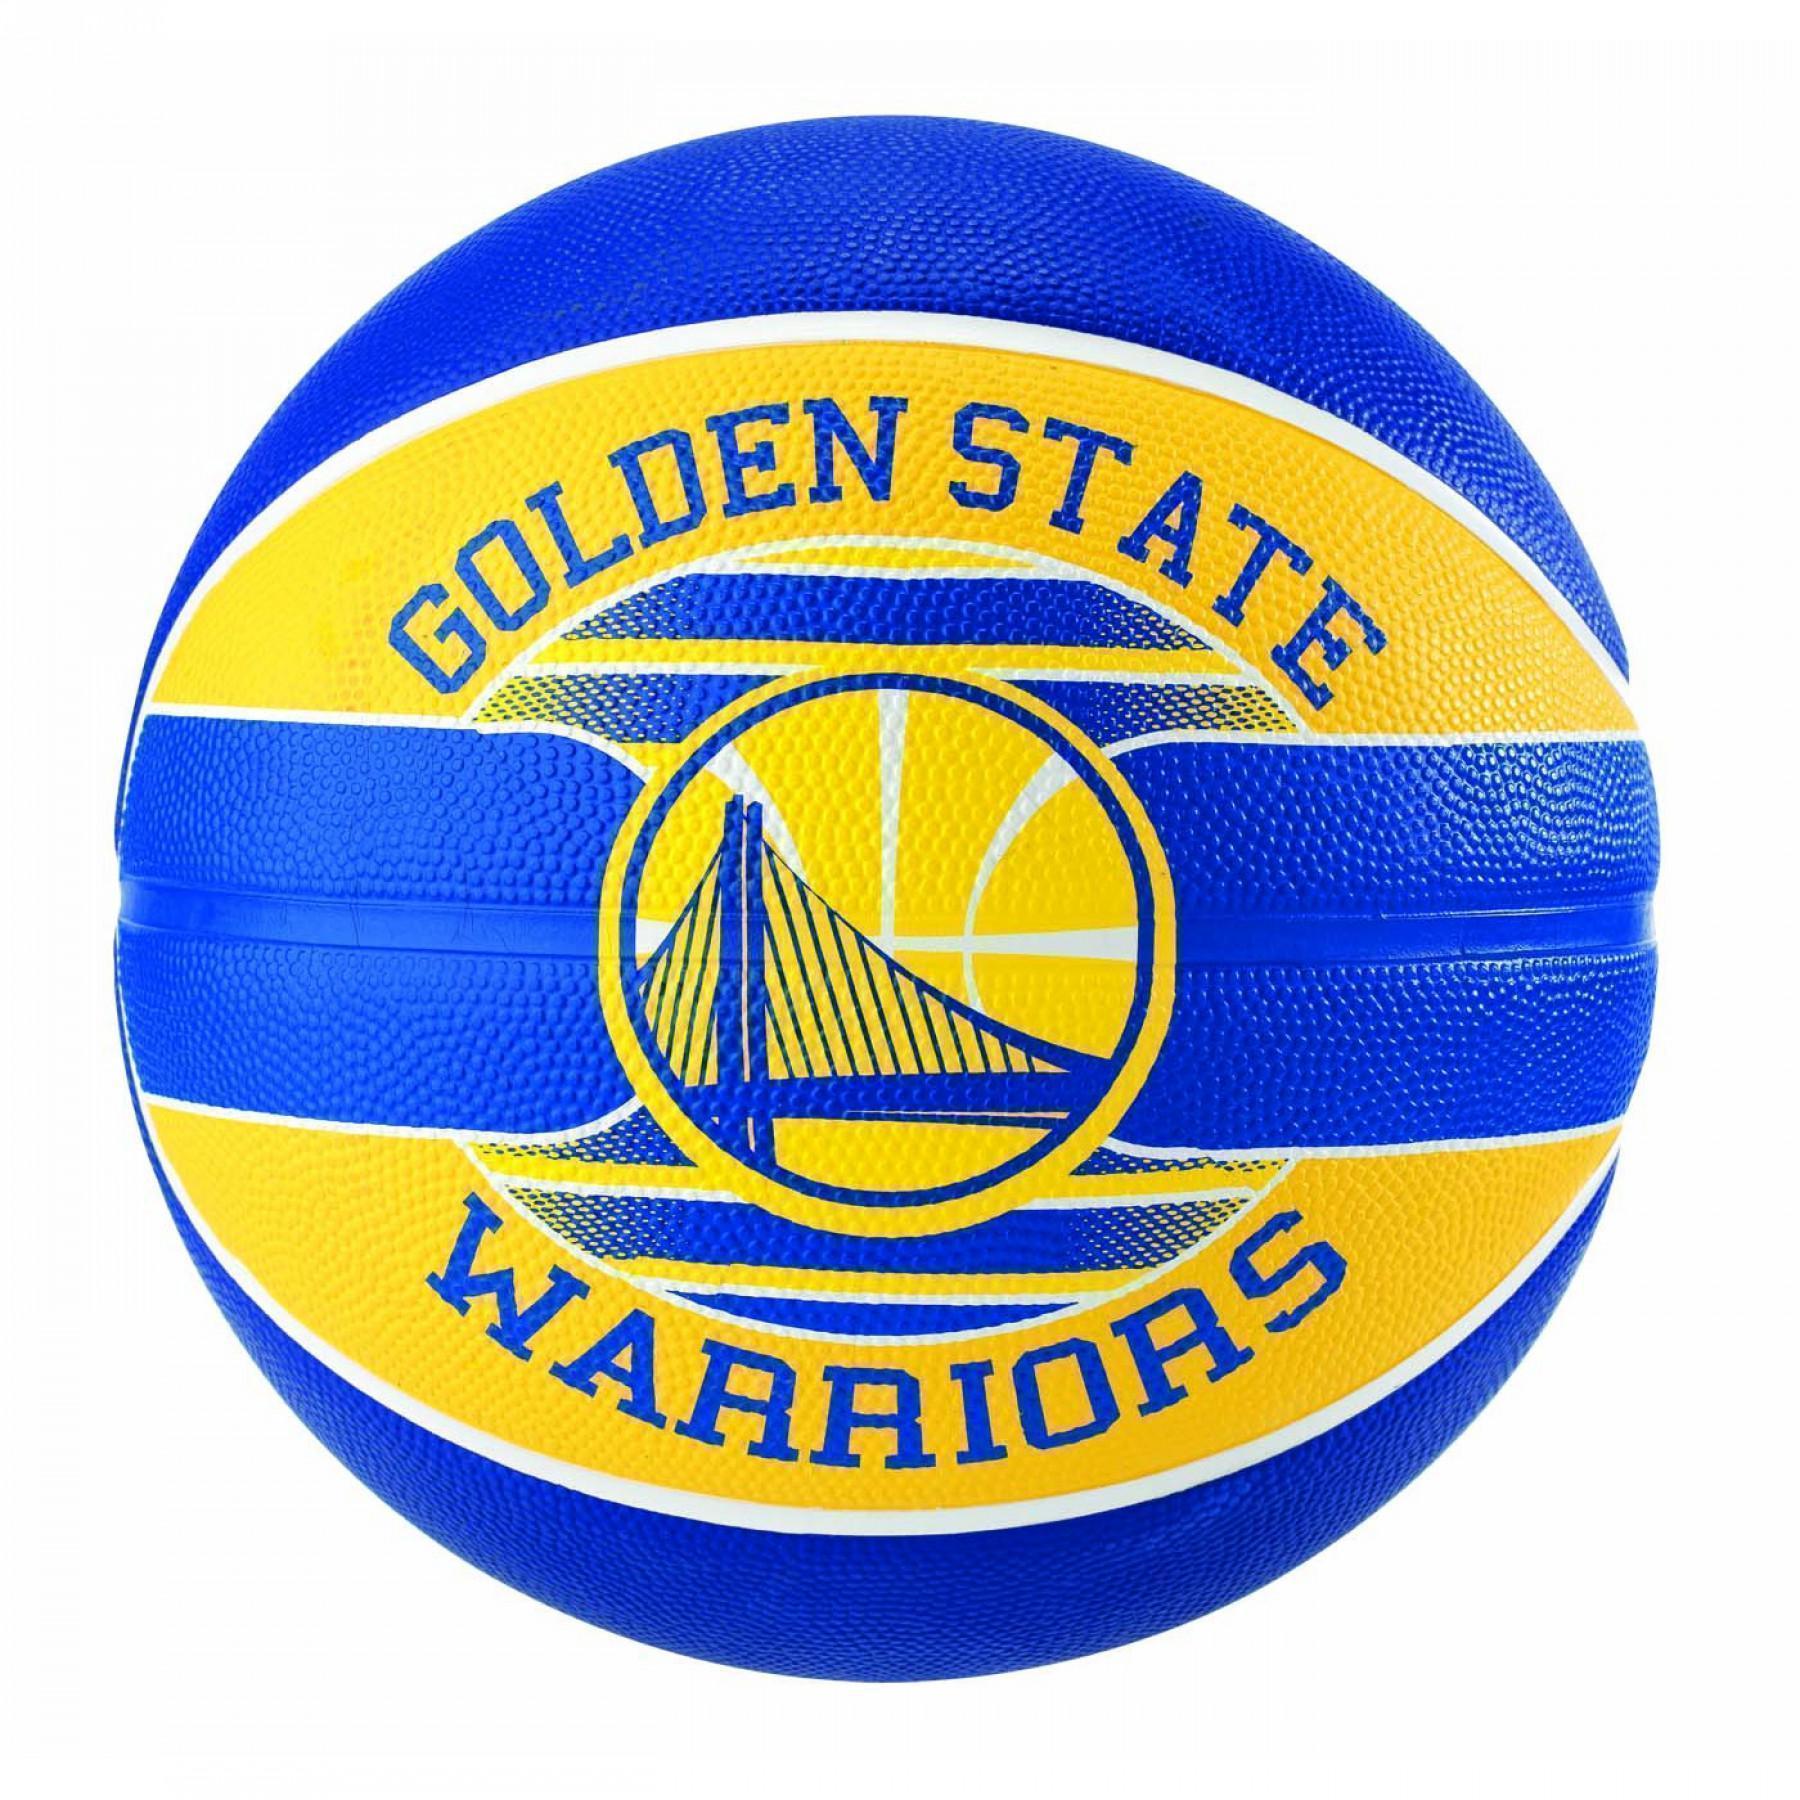 Balon Spalding NBA team ball Golden State Warriors